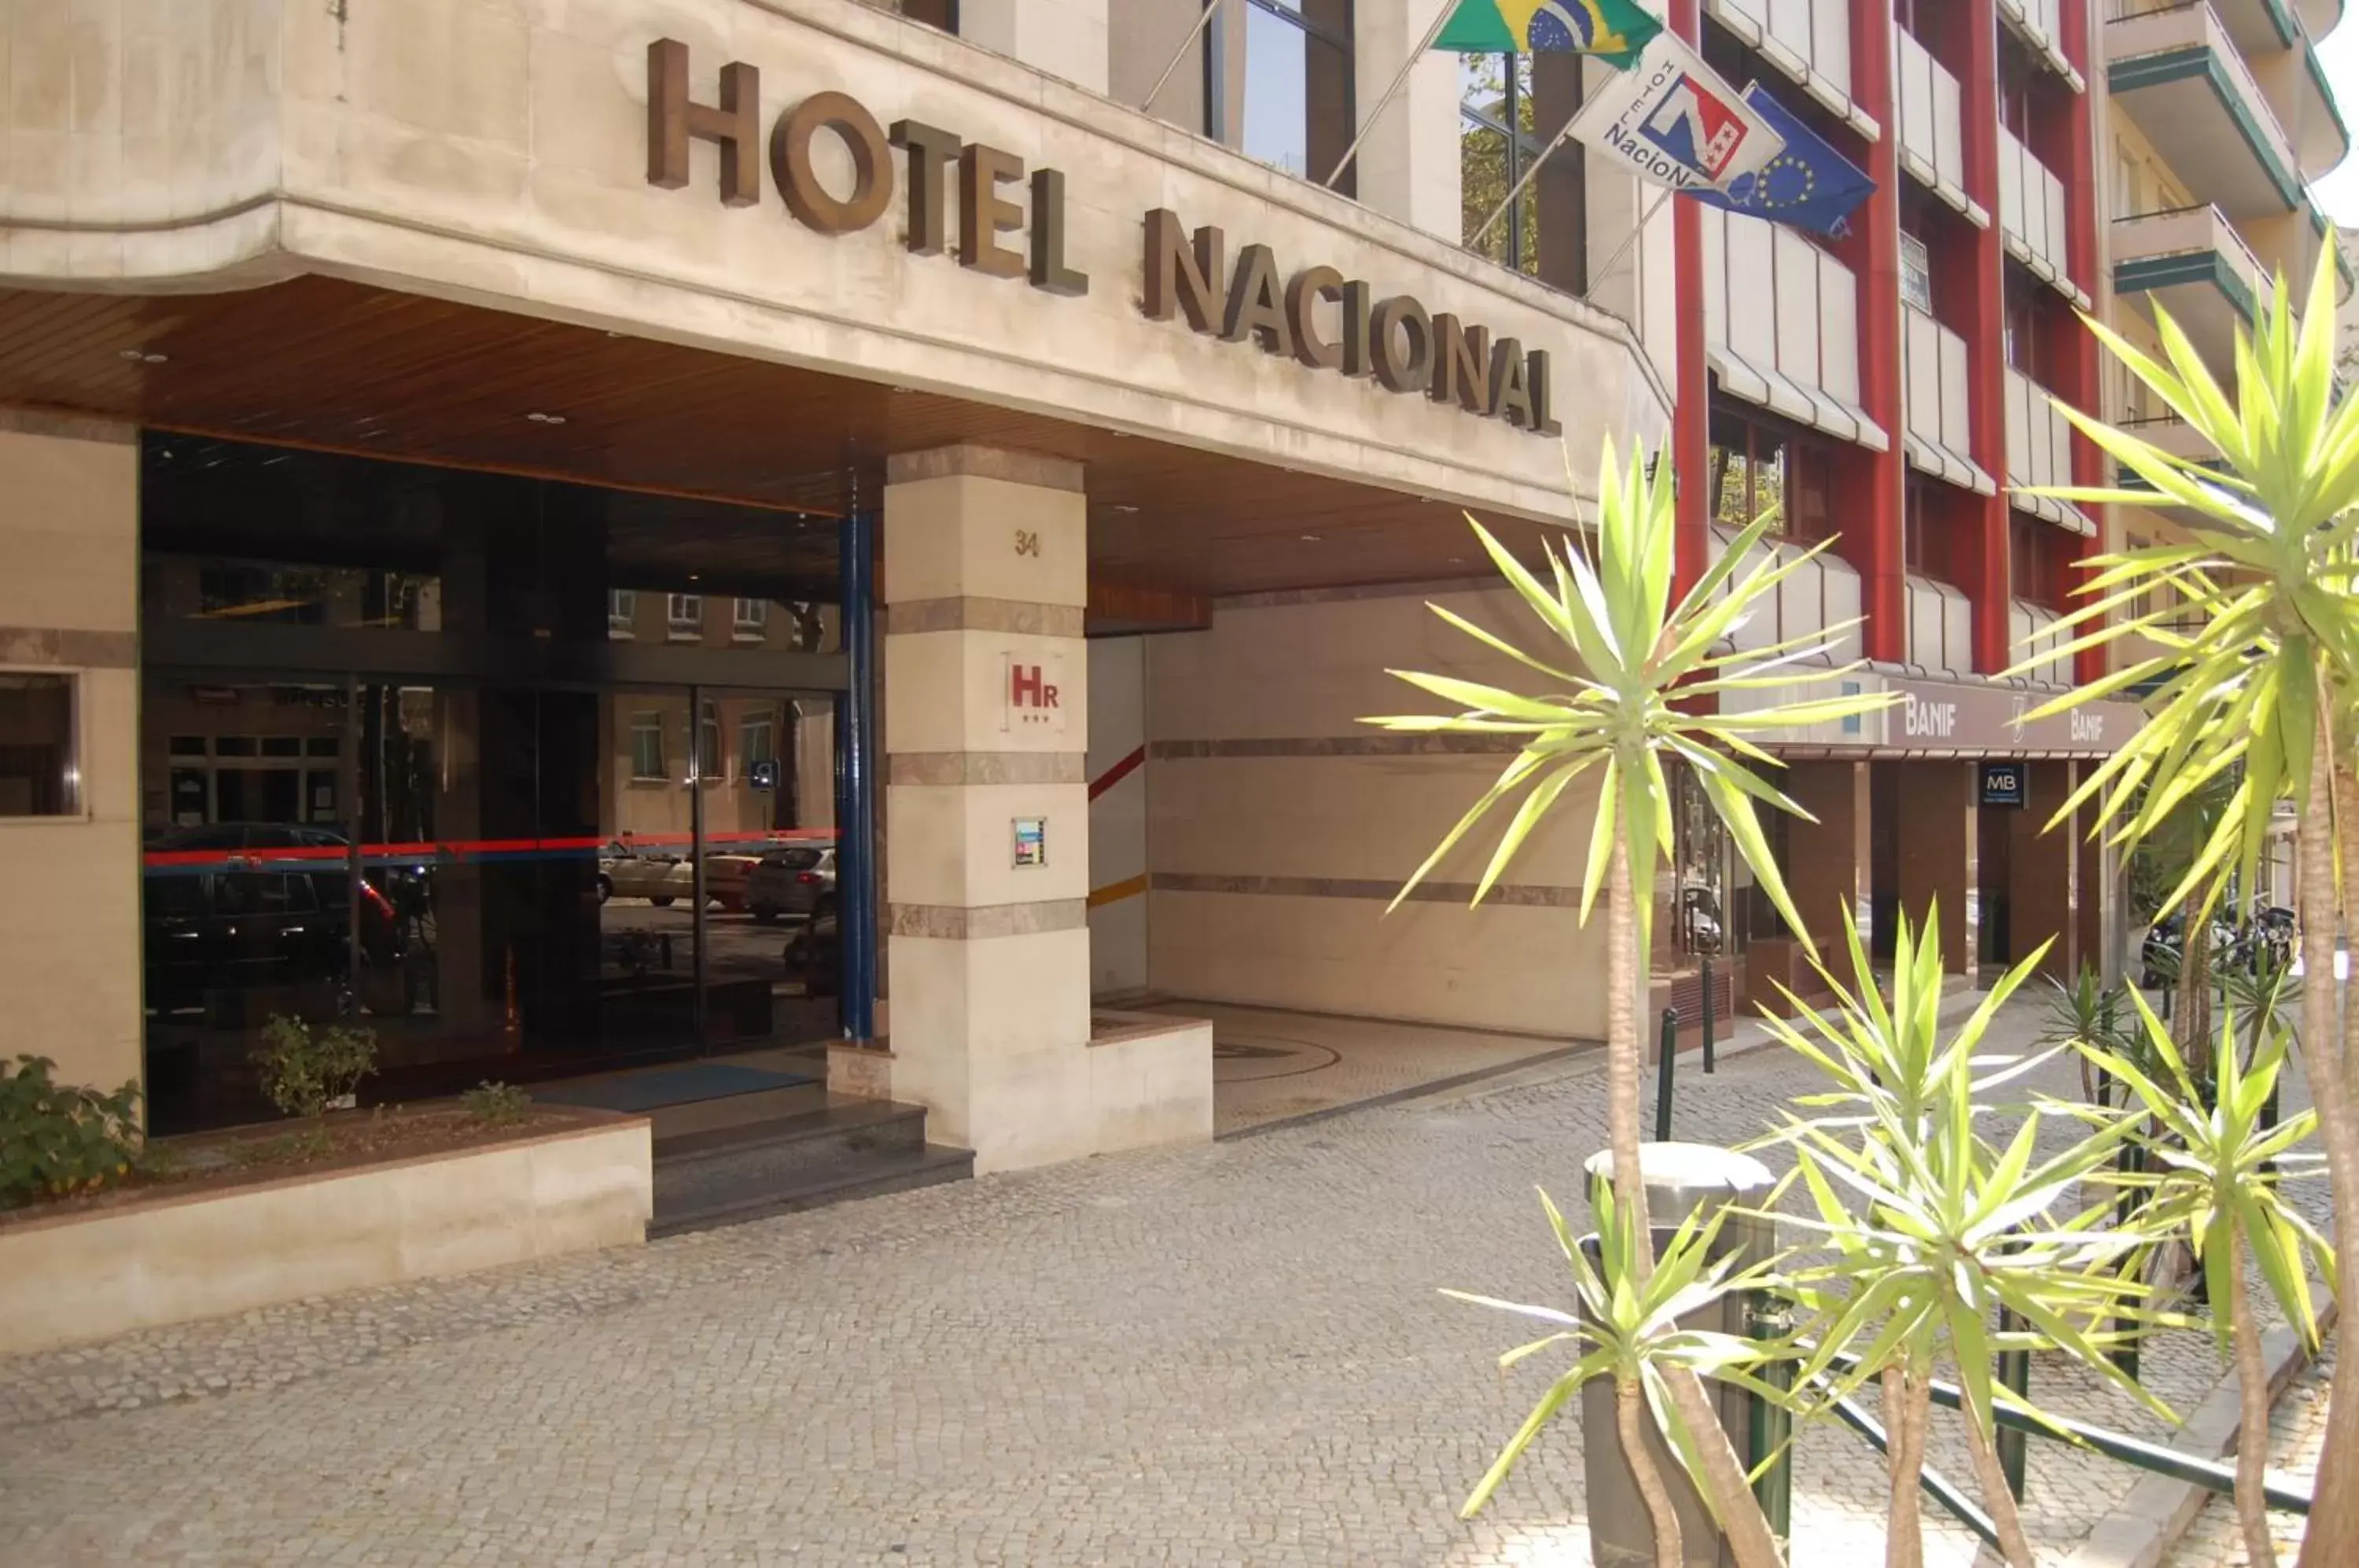 Facade/entrance in Hotel Nacional